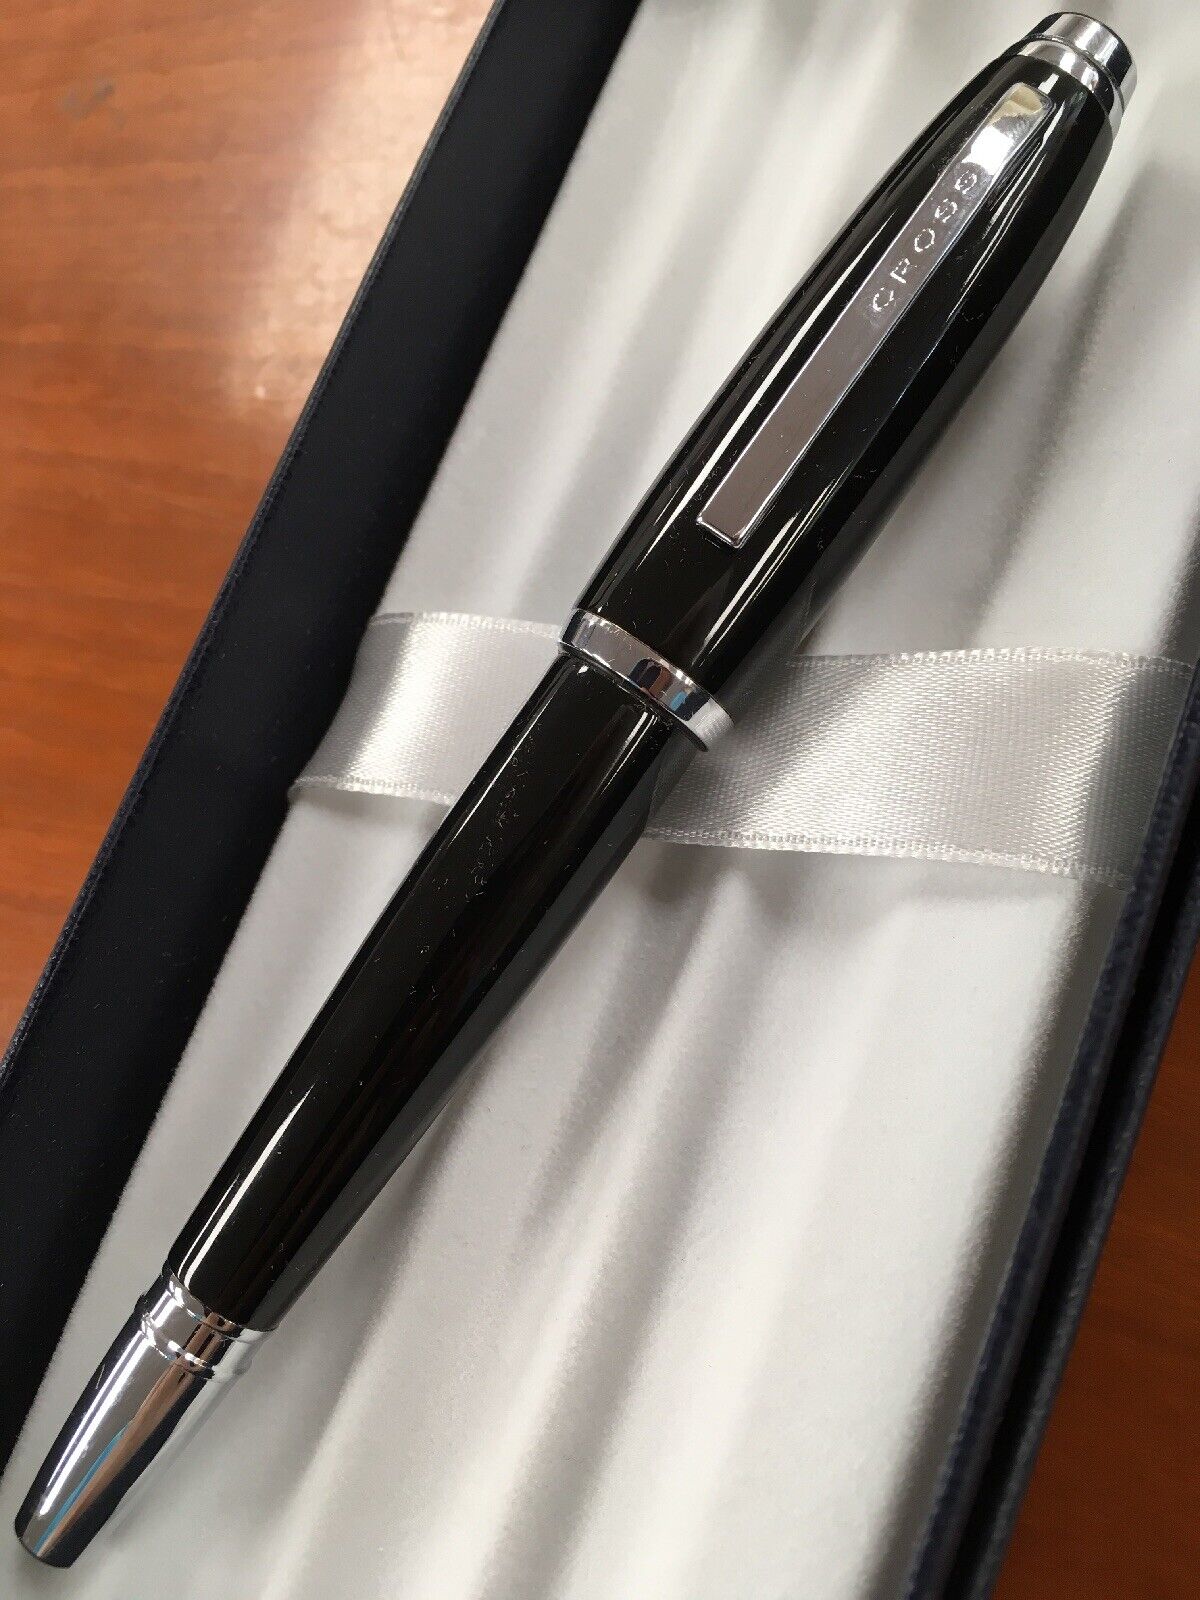 Cross Dubai Black Lacquer/Chrome Trim “M” Nib Fountain Pen